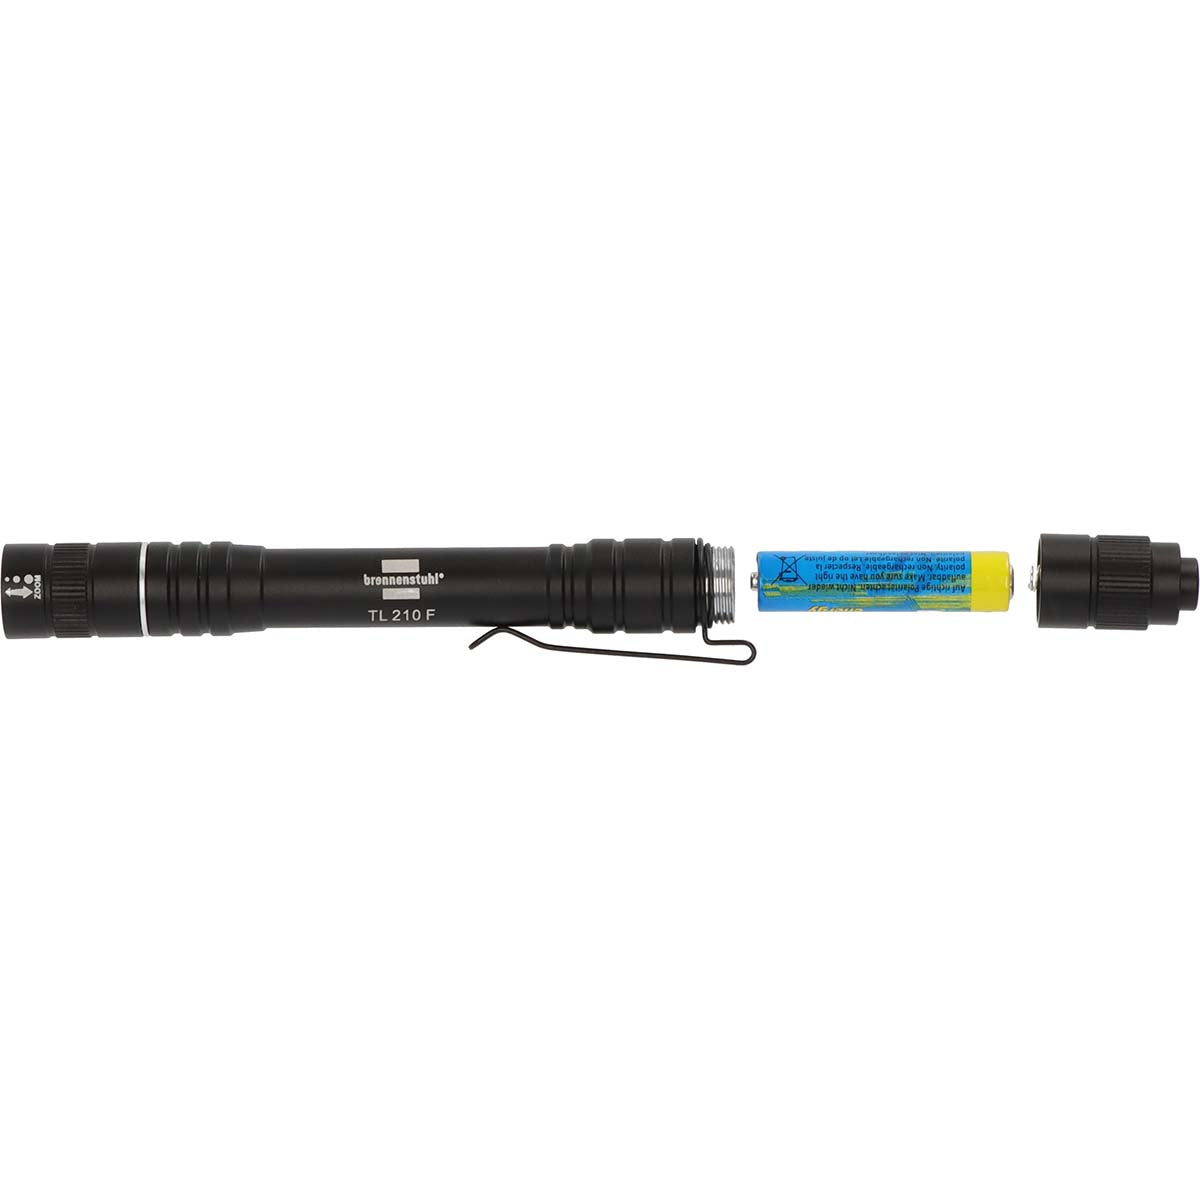 Taschenlampe LED LuxPremium TL 210 F/Taschenlampe mit Batterien und heller Osram LED (180lm, bis zu 7 Stunden Brenndauer, Fremdkörper- und spritzwassergeschützt IP44)